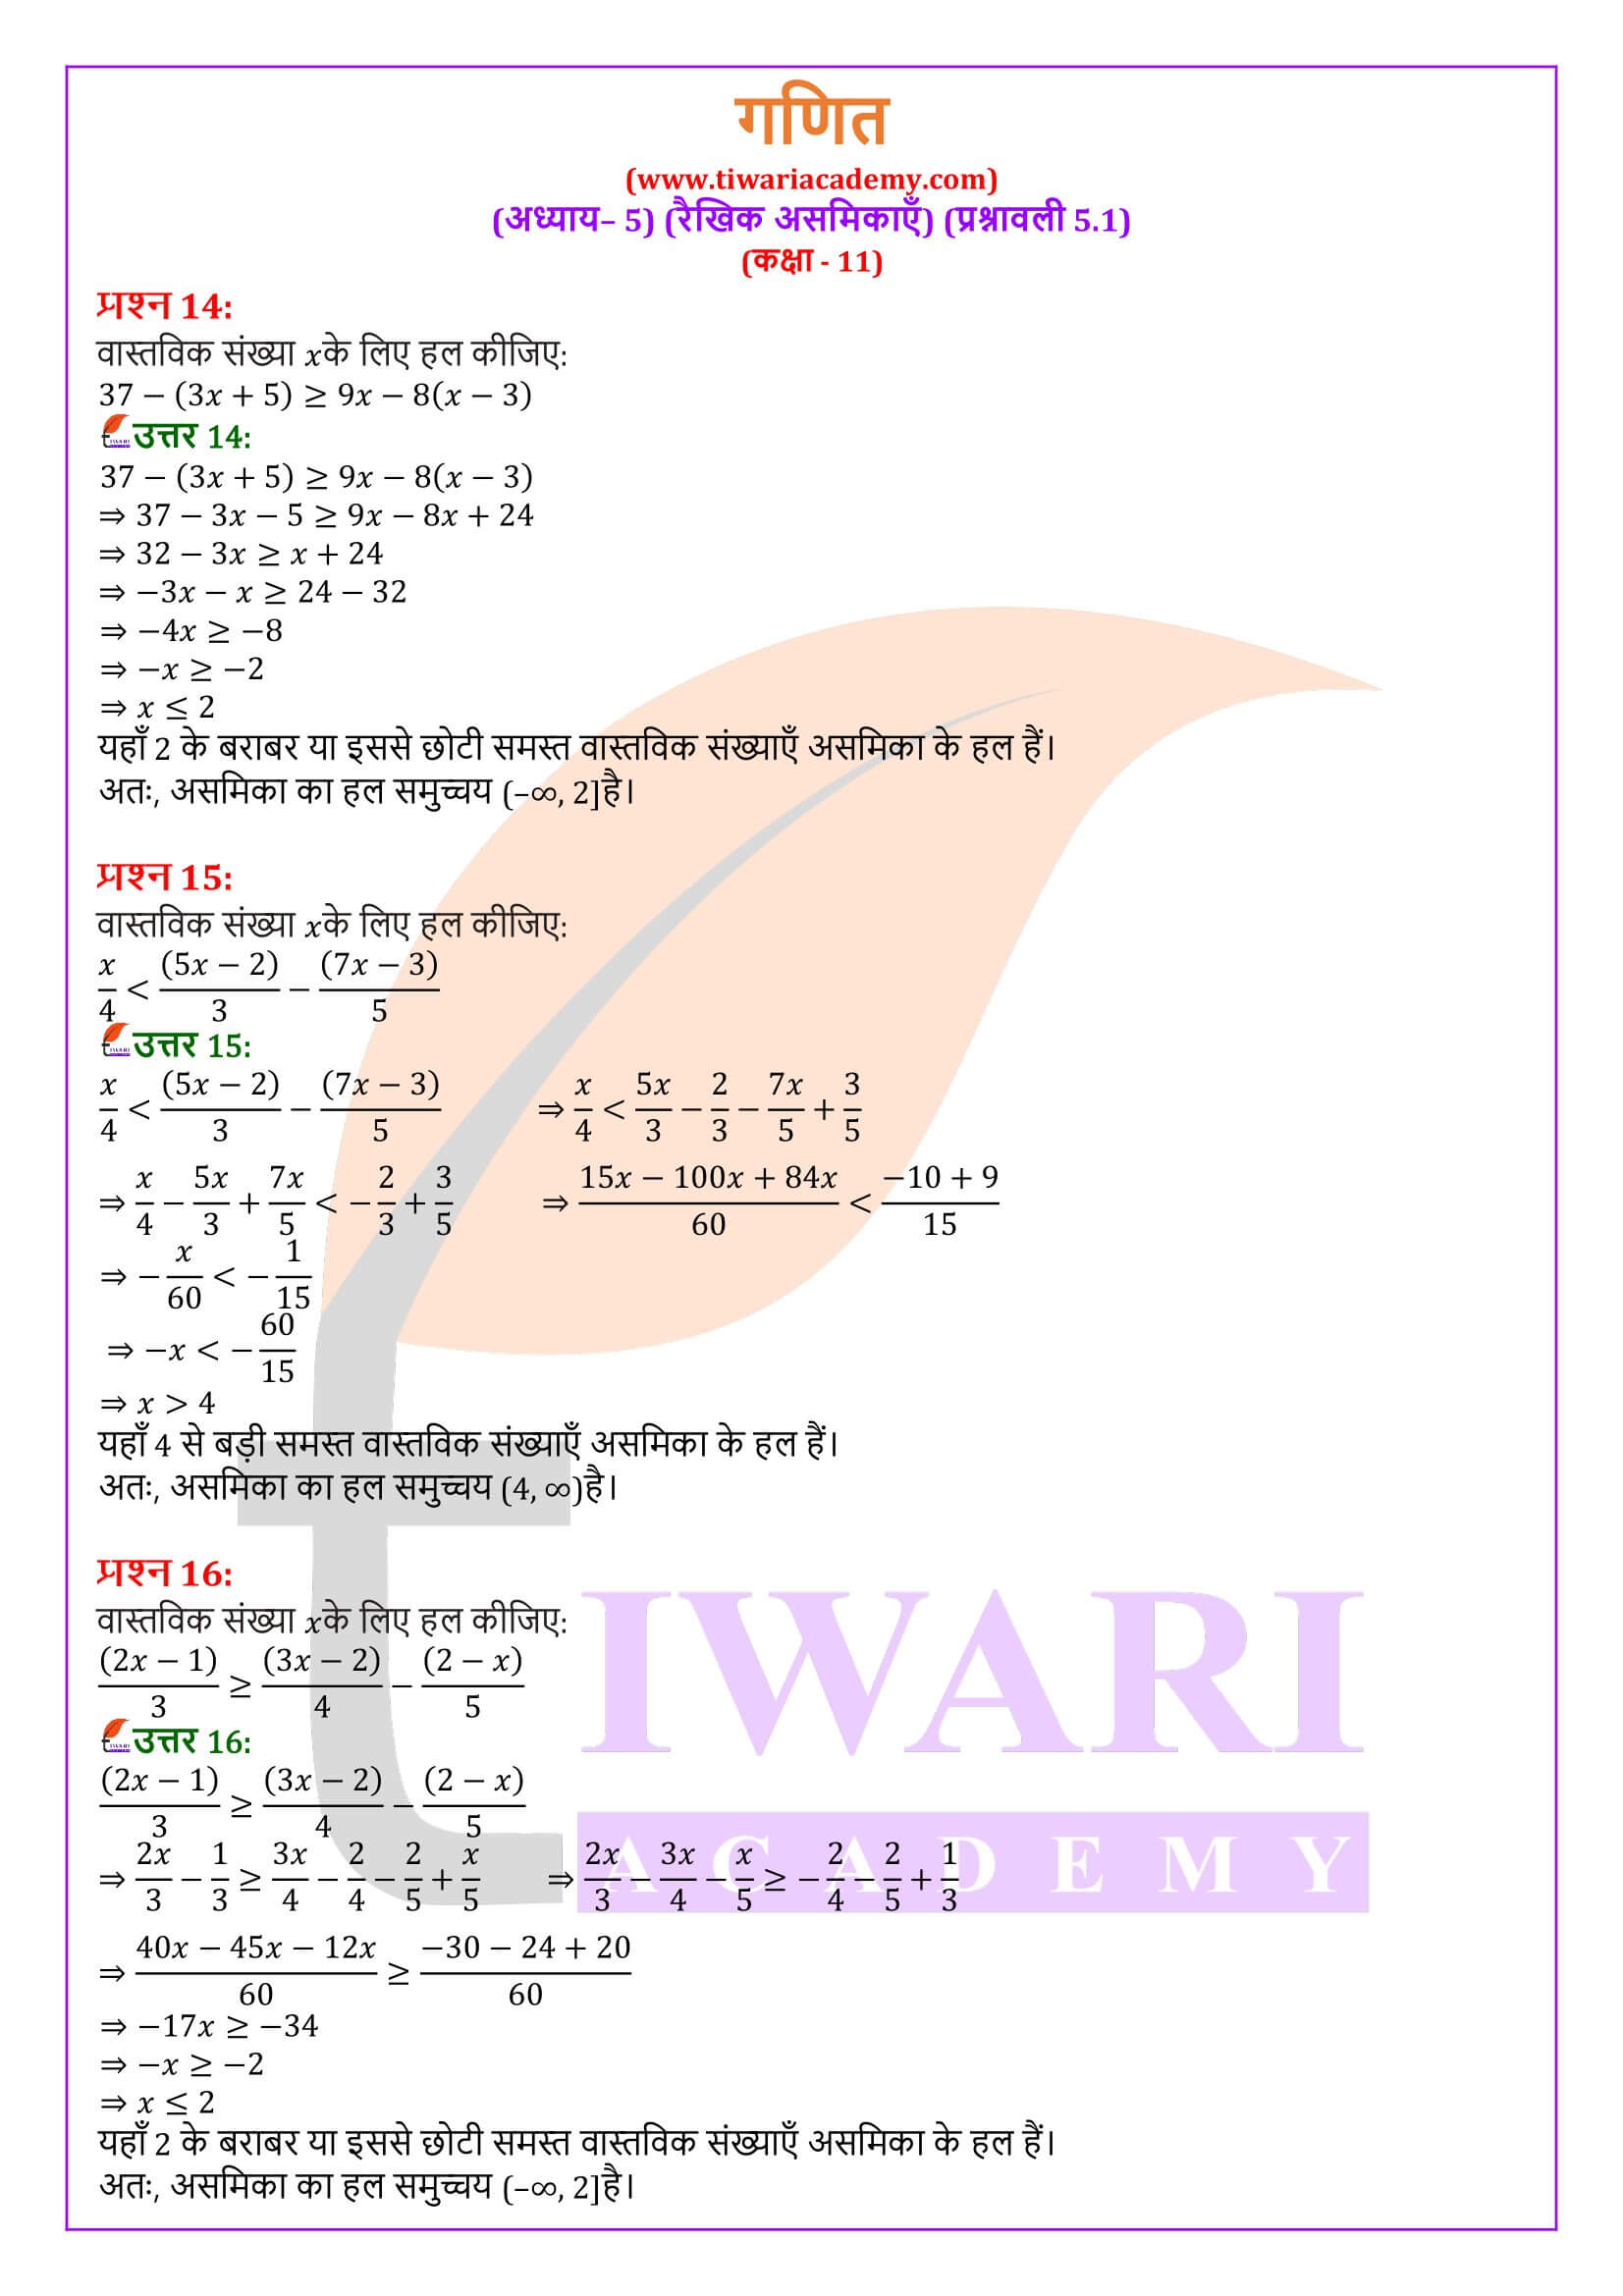 एनसीईआरटी समाधान कक्षा 11 गणित अभ्यास 5.1 के हल हिंदी में